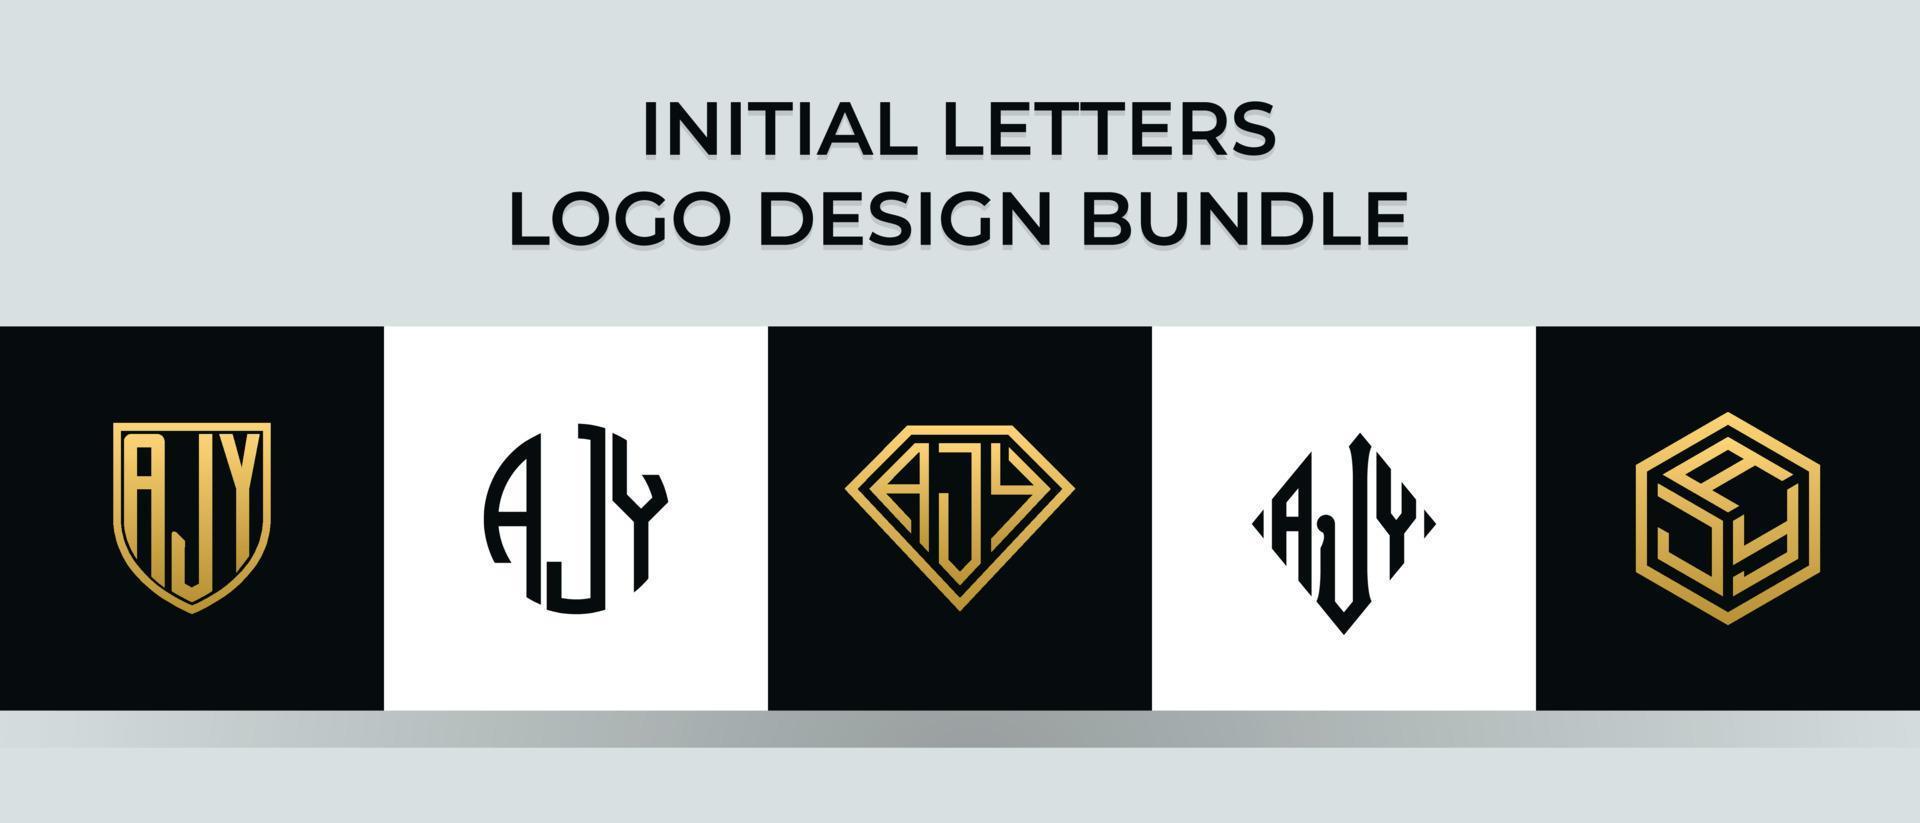 letras iniciales ajy logo diseños paquete vector